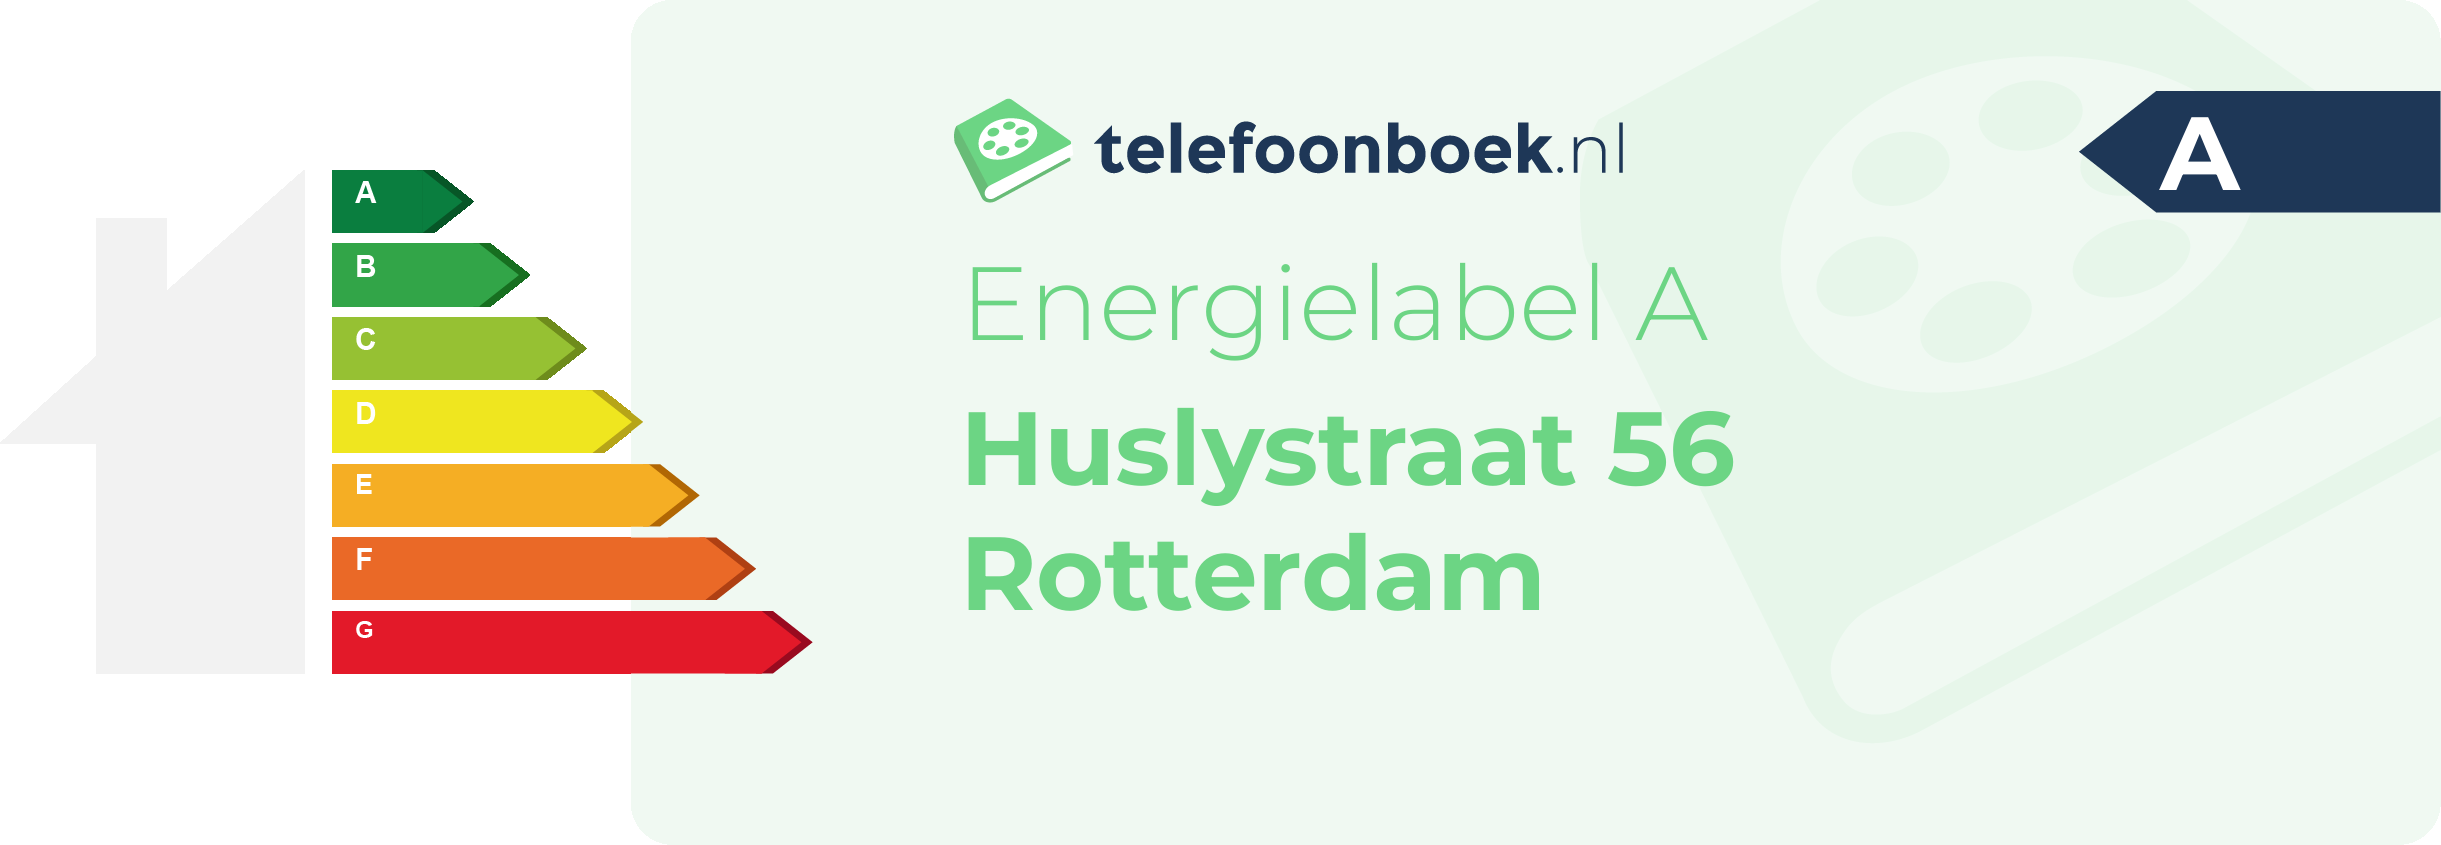 Energielabel Huslystraat 56 Rotterdam